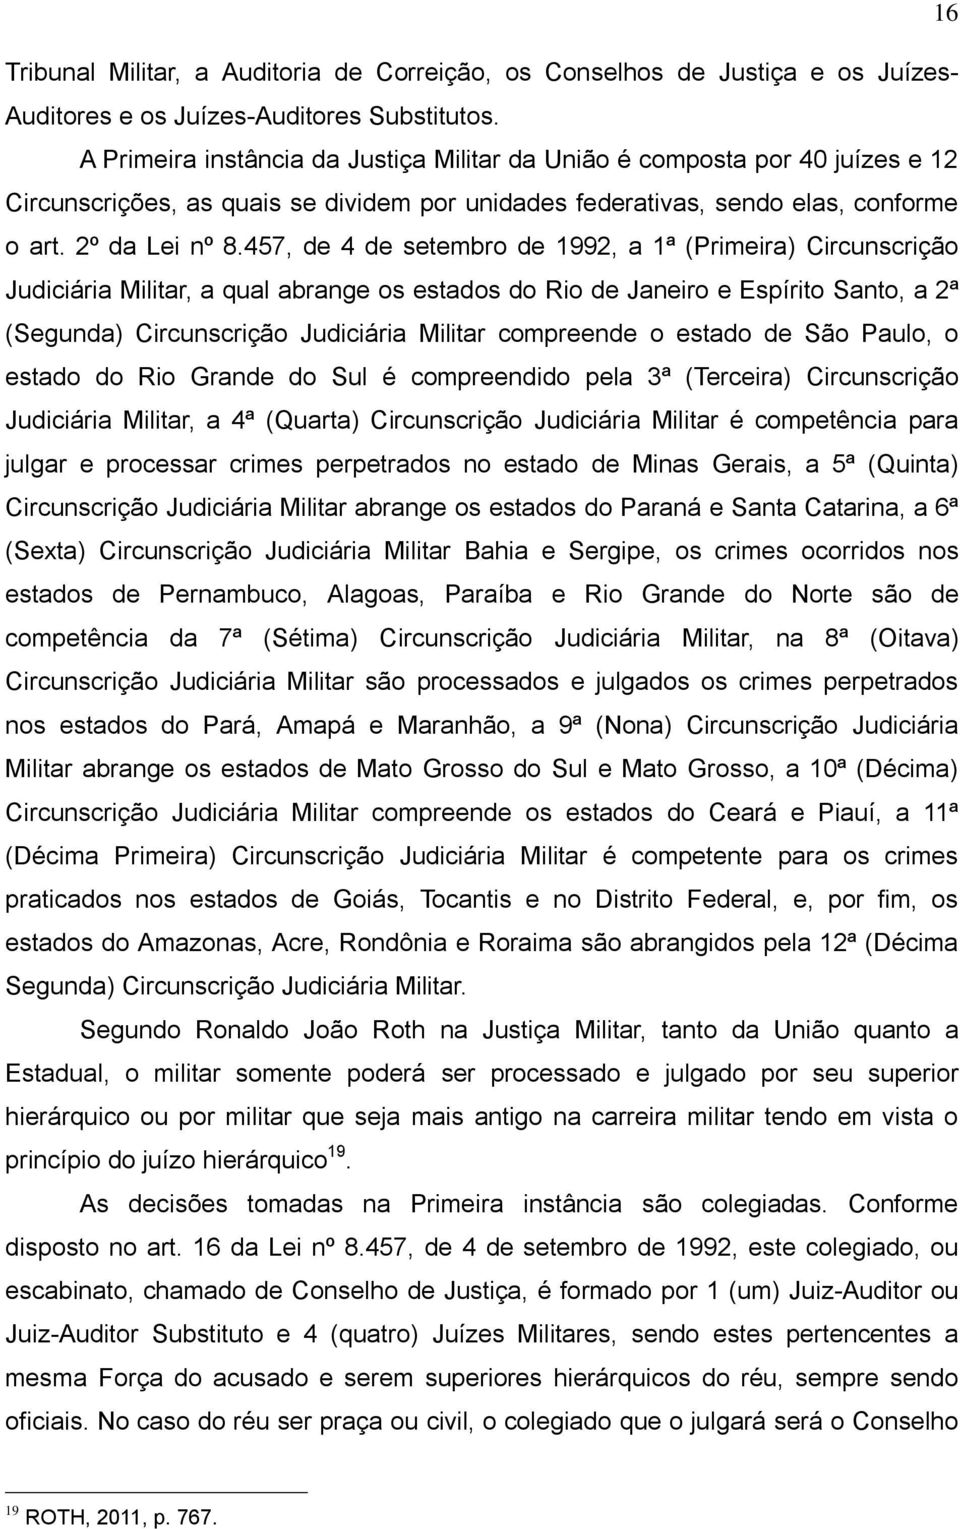 457, de 4 de setembro de 1992, a 1ª (Primeira) Circunscrição Judiciária Militar, a qual abrange os estados do Rio de Janeiro e Espírito Santo, a 2ª (Segunda) Circunscrição Judiciária Militar